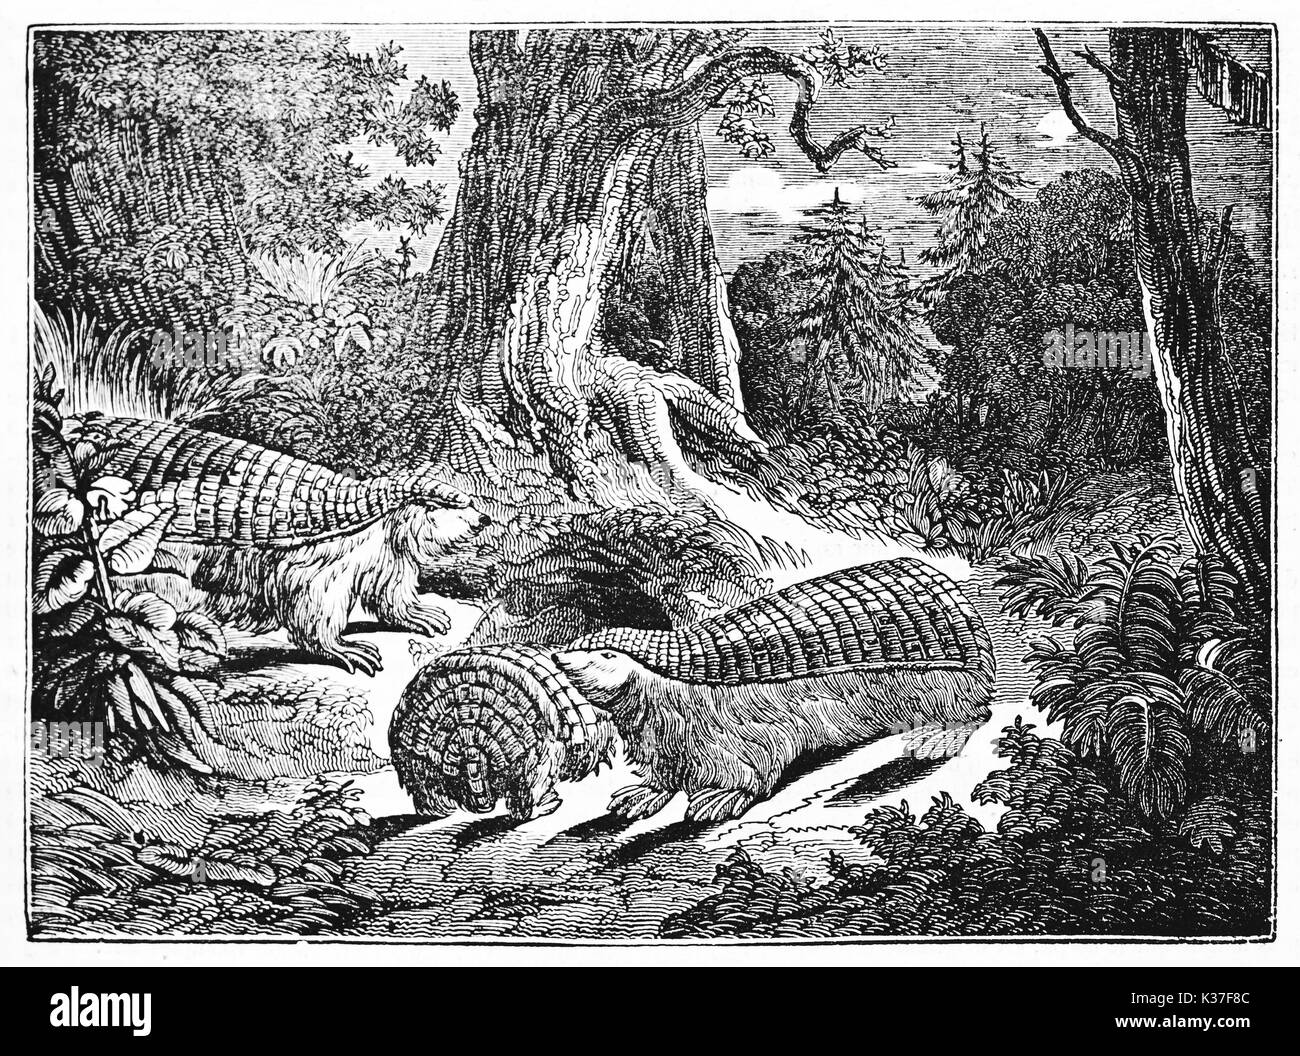 Pink fairy armadillo famiglia nel profondo della vegetazione di una foresta, il nome scientifico è Chlamyphorus truncatus. Vecchia illustrazione di autore non identificato pubblicato il Magasin pittoresco Parigi 1834 Foto Stock